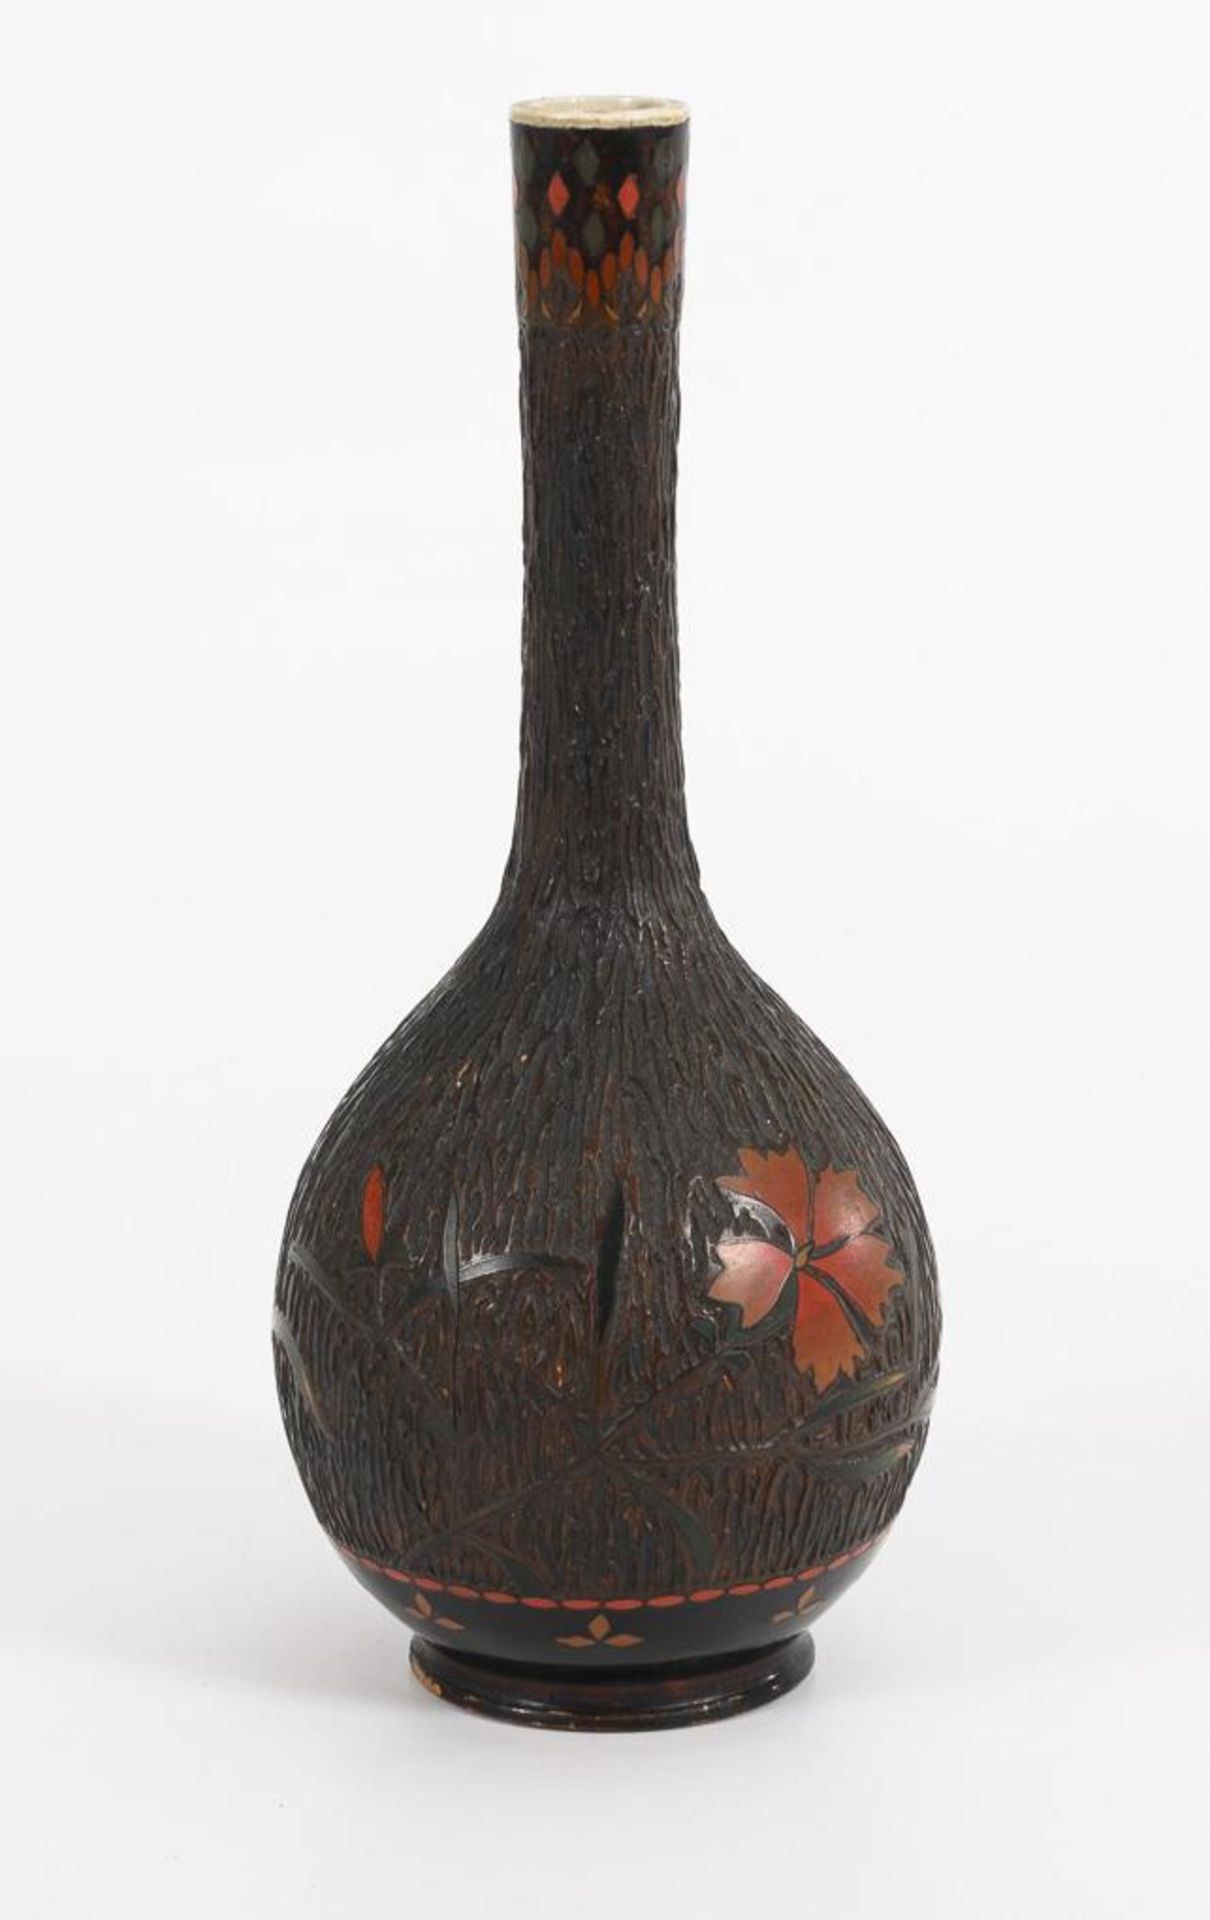 Ungewöhnliche Vase mit Vogeldekor. - Image 2 of 3